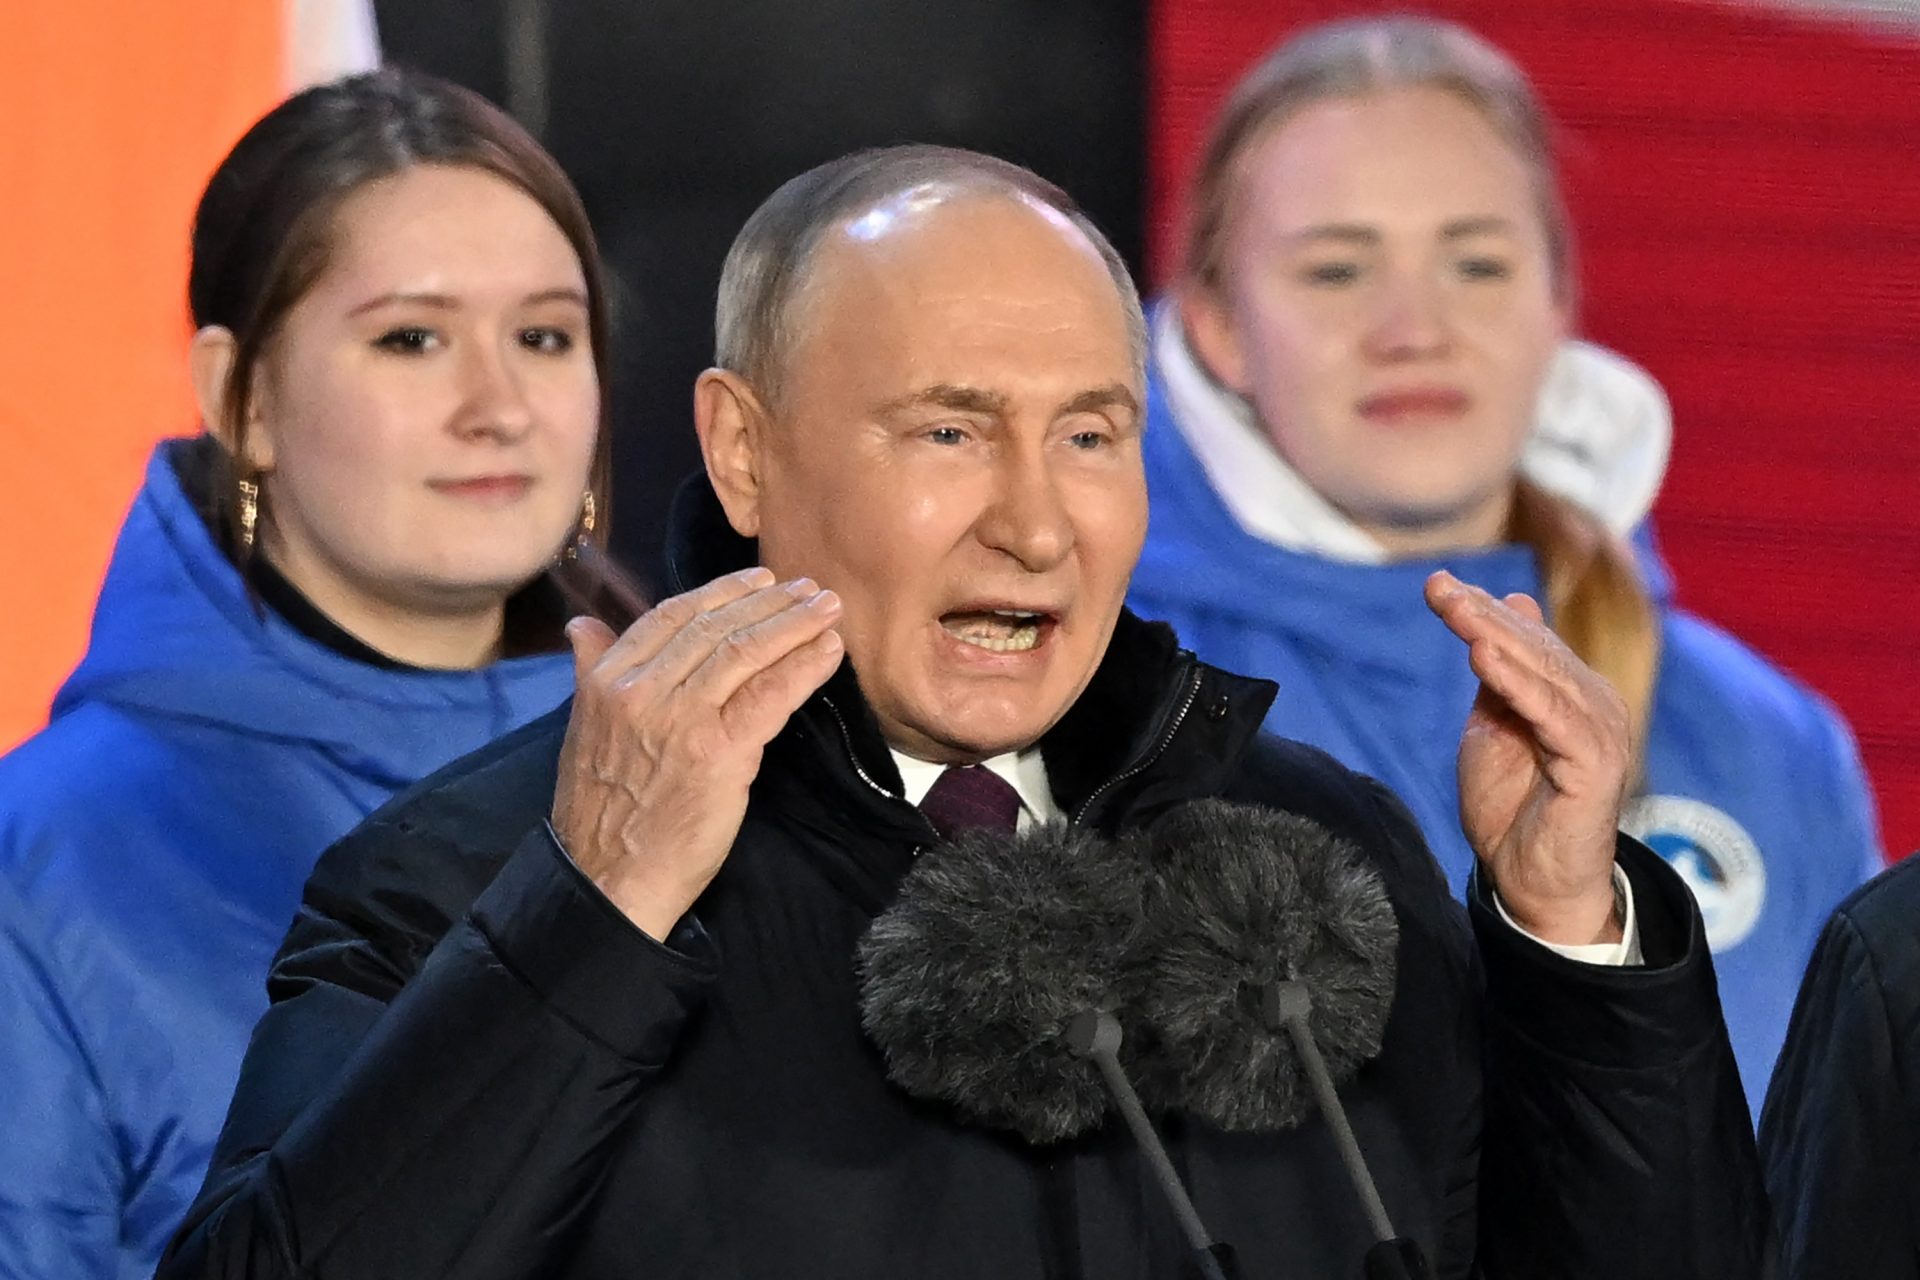 Putin's unsettling words